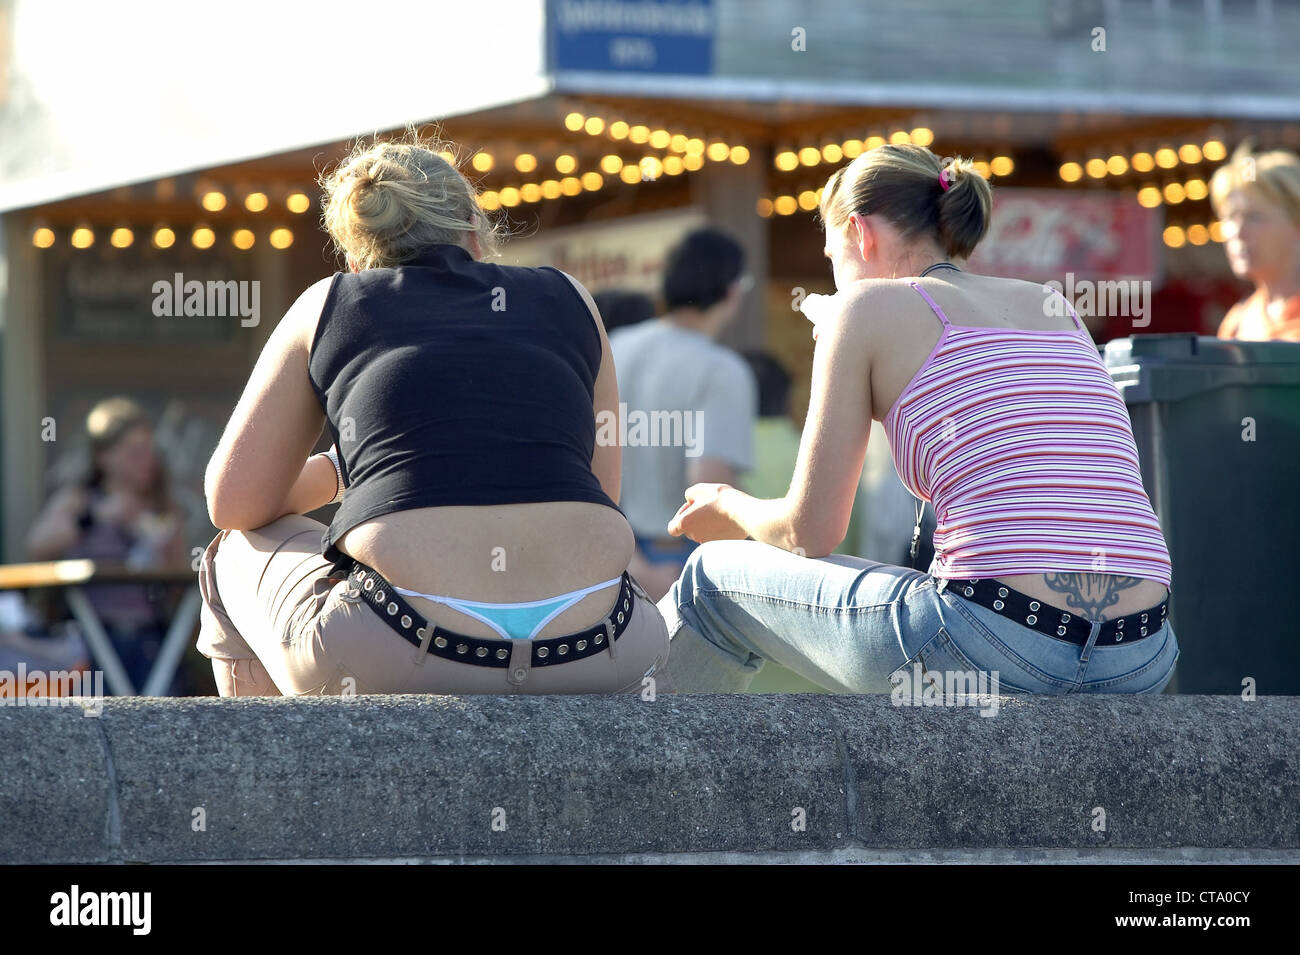 Mädchen mit Hipstern und sichtbare Tanga Stockfotografie - Alamy